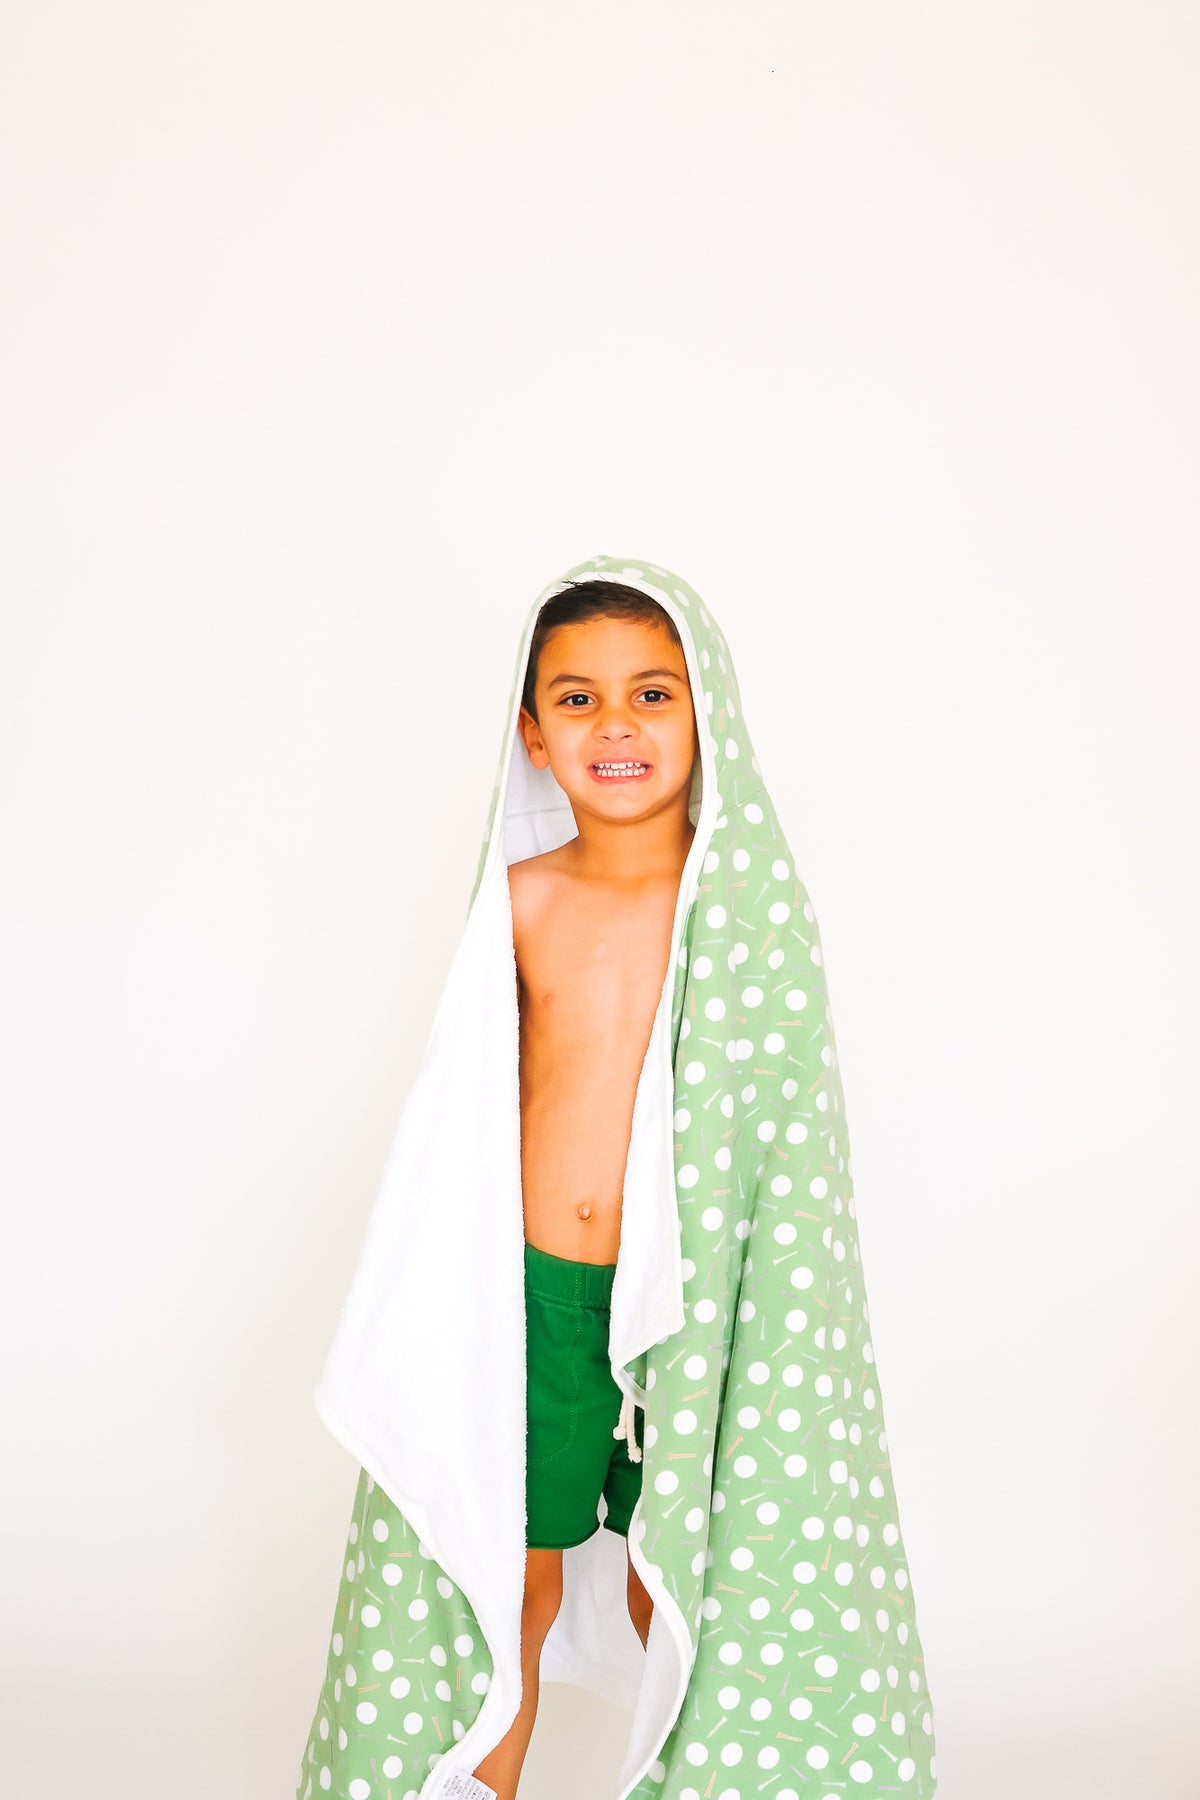 Premium Big Kid Hooded Towel - Bogey